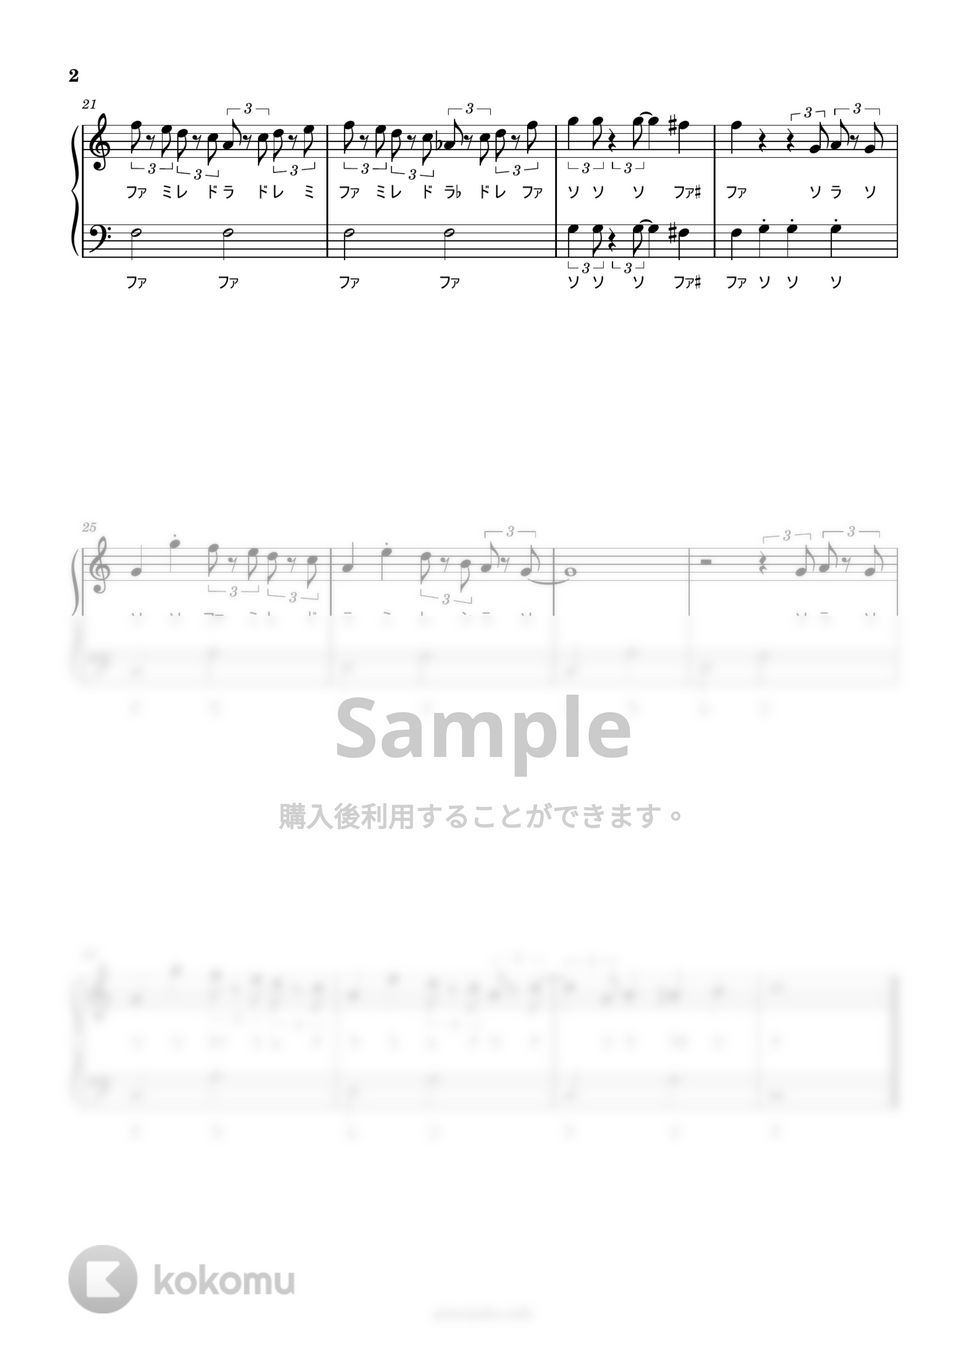 久石譲 - 五月の村 (ドレミ付き/ハ長調/簡単楽譜) by ピアノ塾